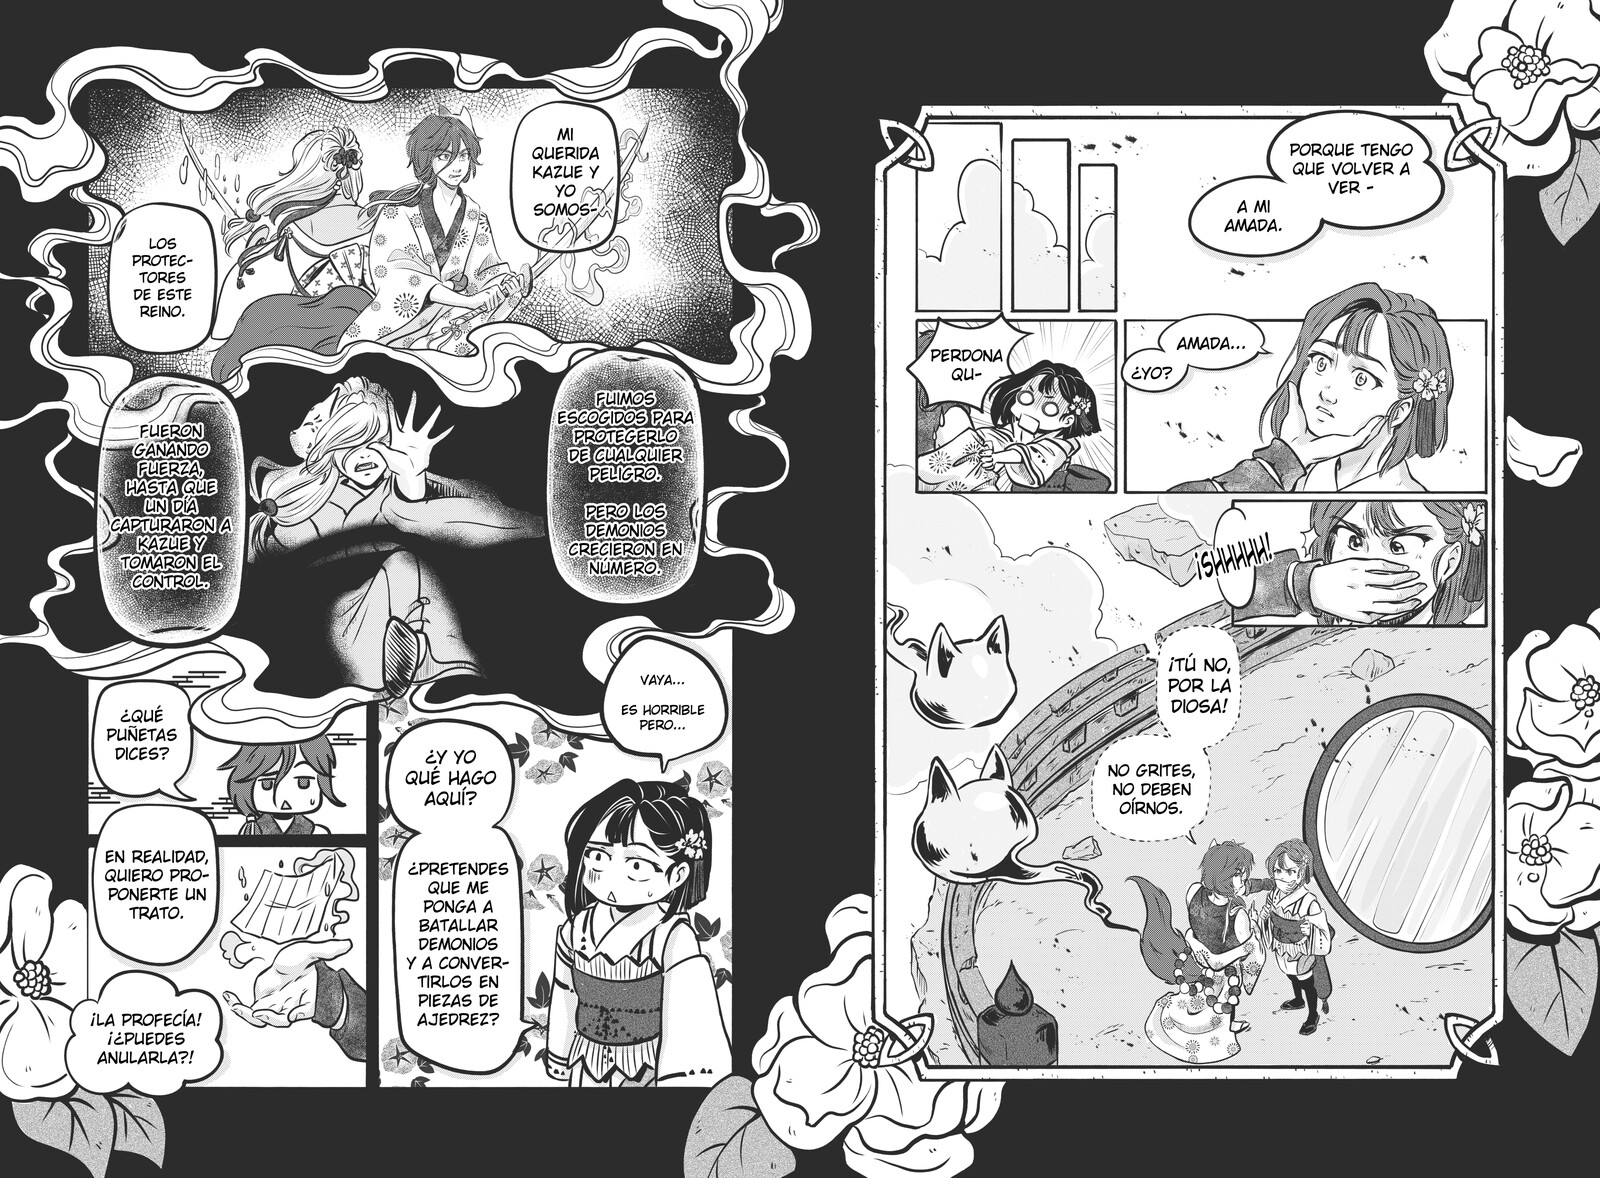 Pages for manga story "Kioka. La profecía al otro lado del espejo" part 2.